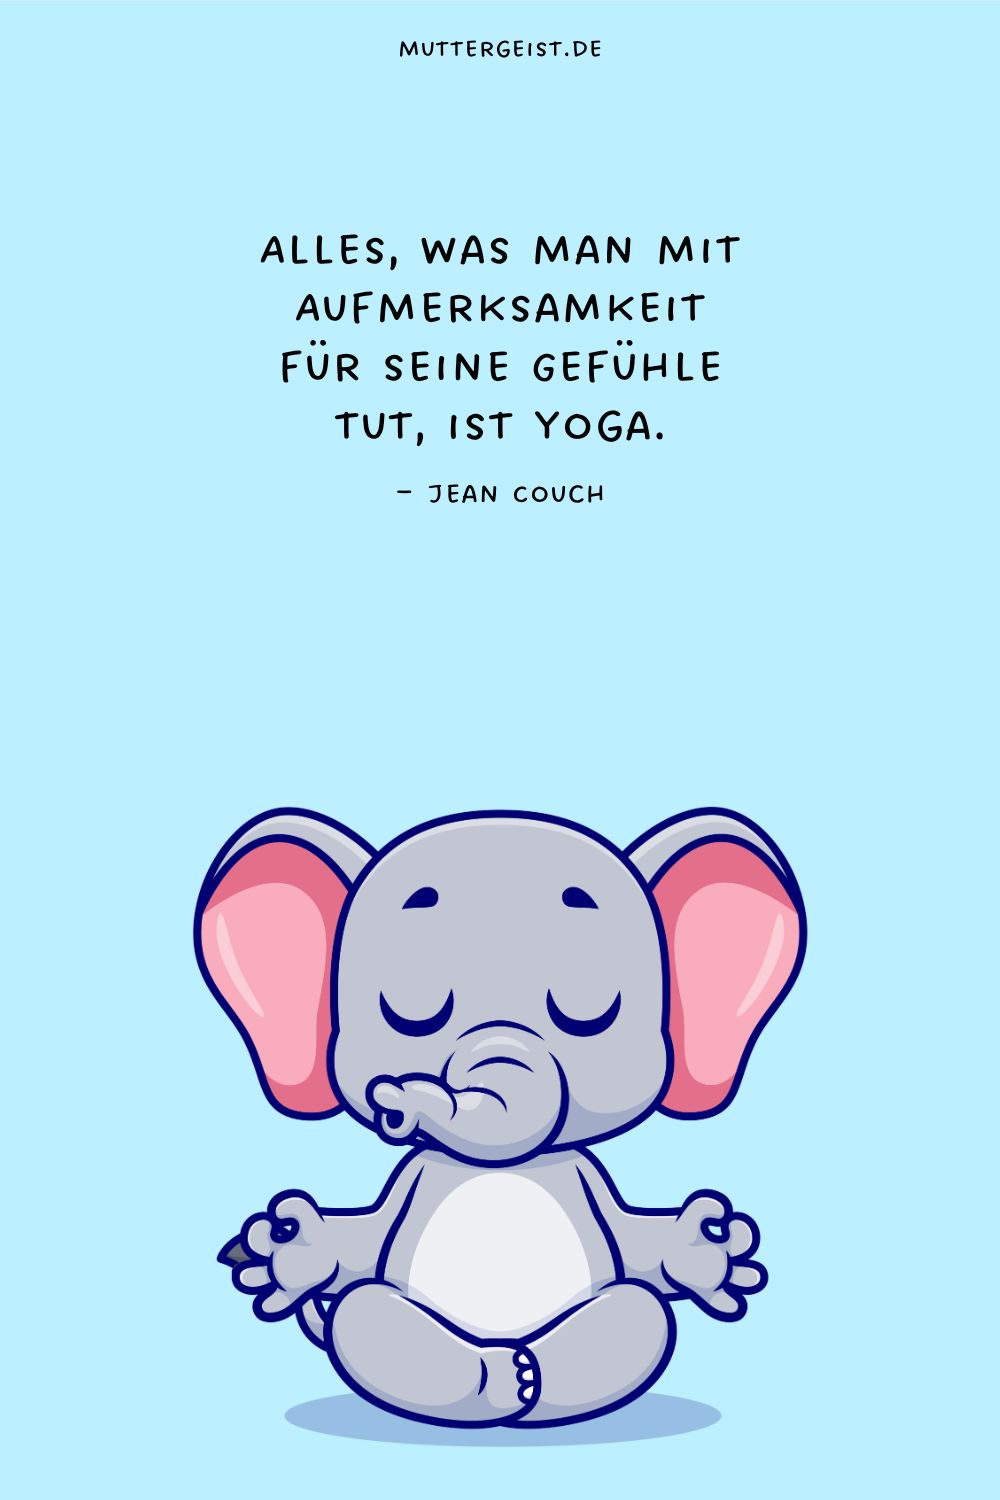 Alles, was man mit Aufmerksamkeit für seine Gefühle tut, ist Yoga